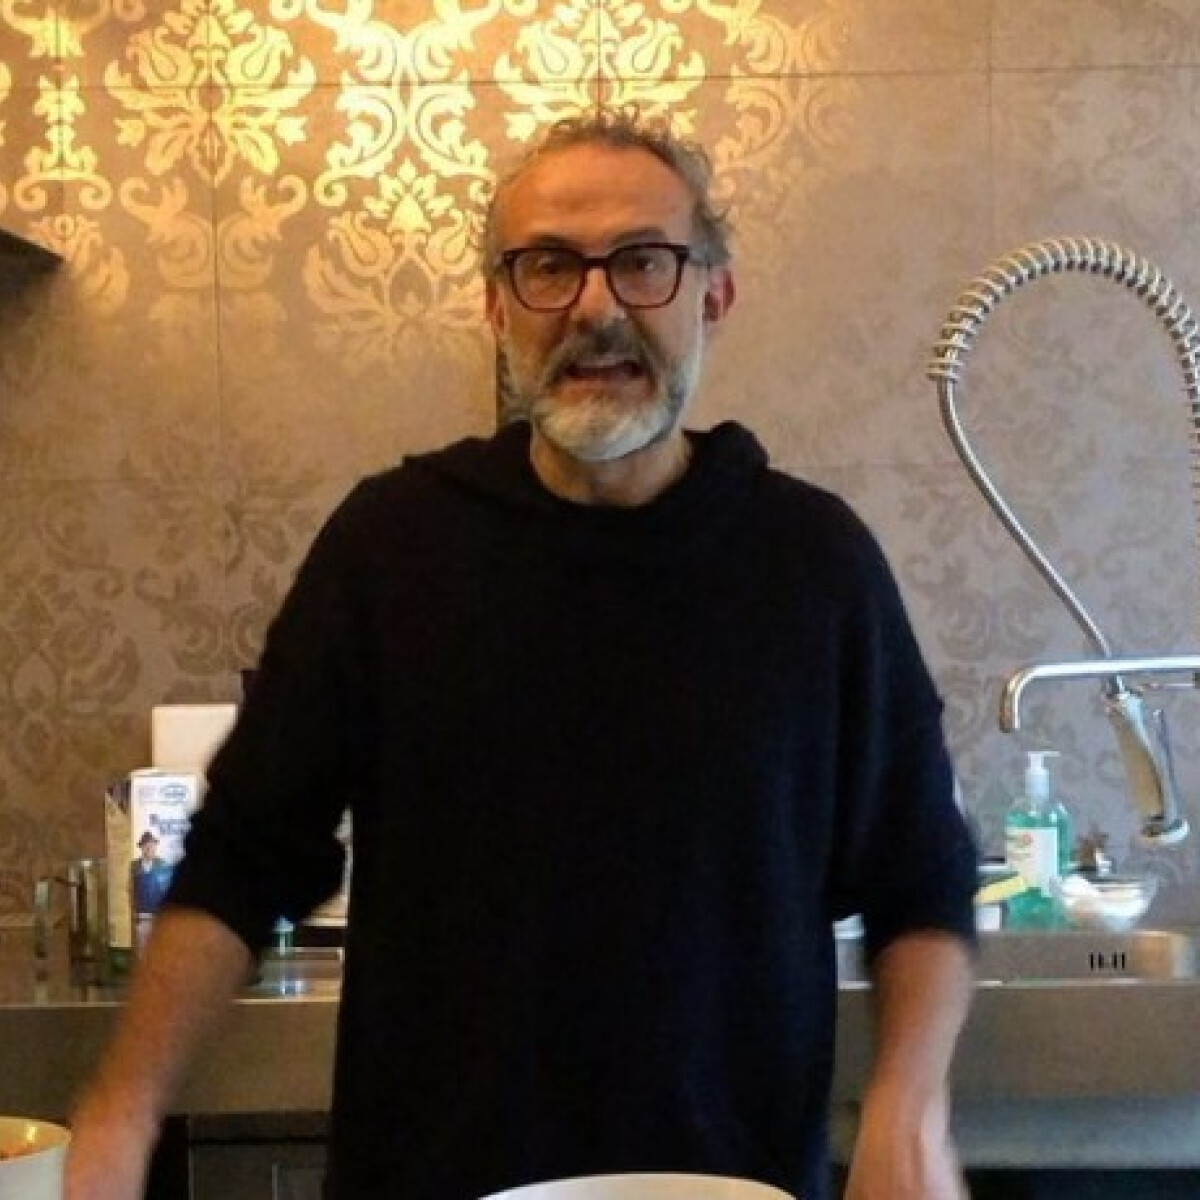 5 híres séf jó tanácsa az otthoni főzéshez - tanulj Gordon Ramsaytől és Massimo Botturától!